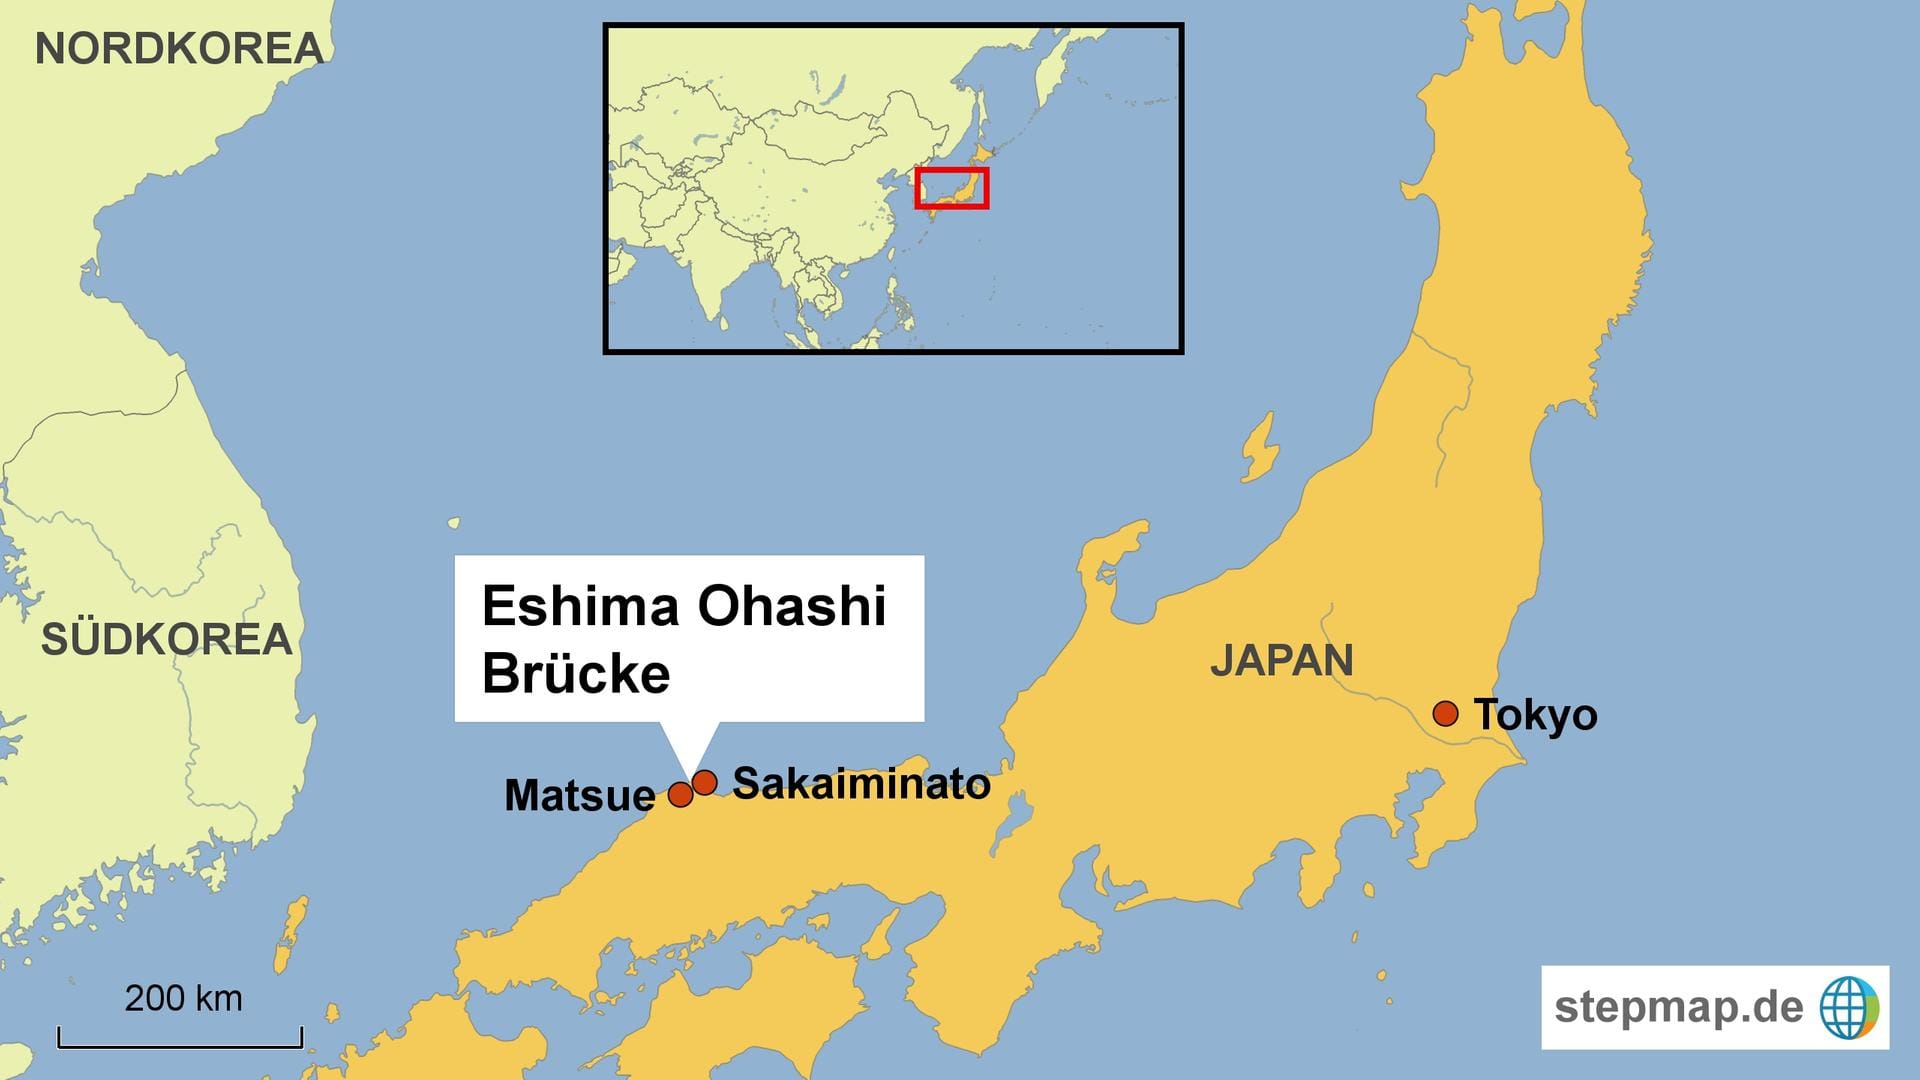 Die Eshima Ohashi Bridge verbindet die Städte Matsue und Sakaiminato, die am nördlichen Ende der japanischen Halbinsel Yumigahama liegen